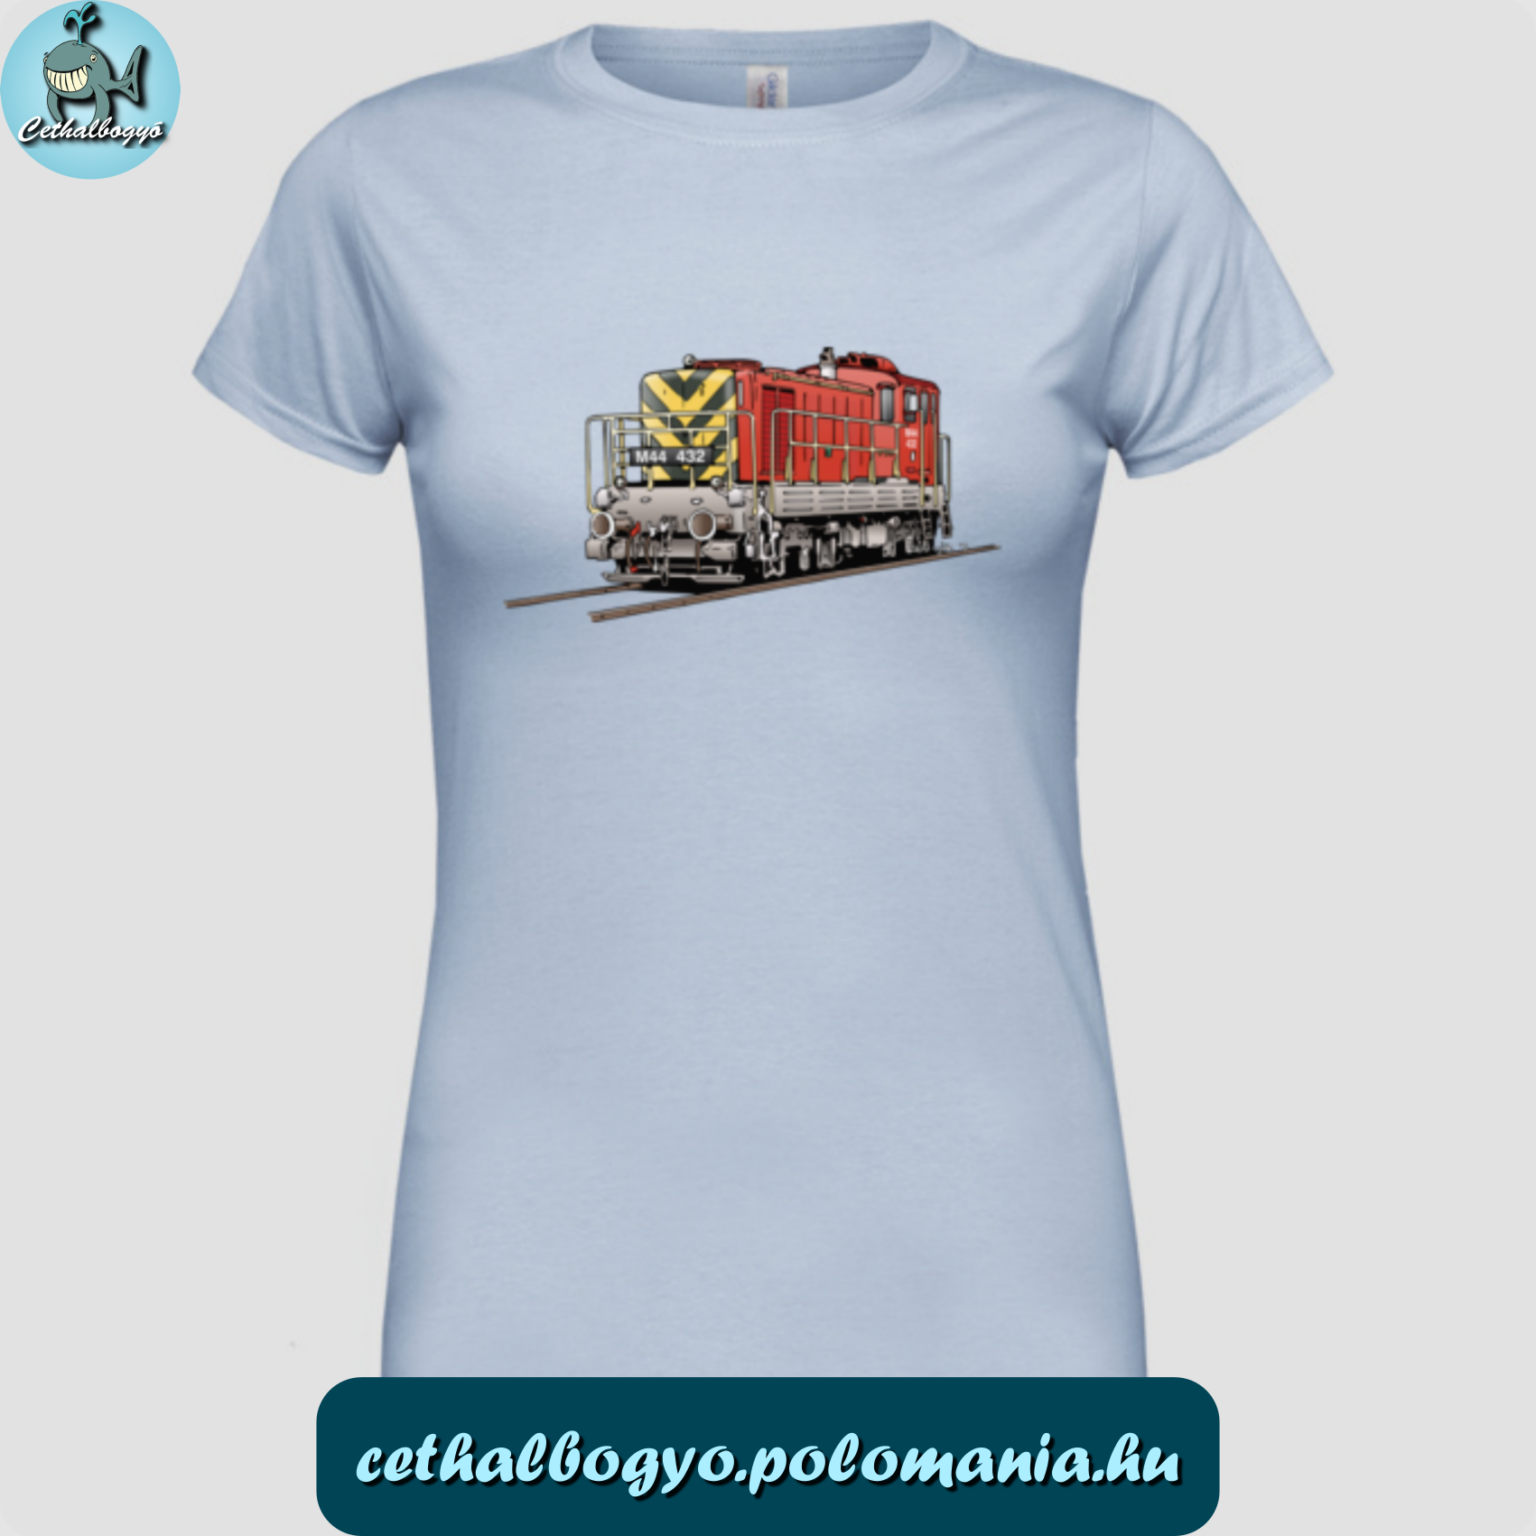 Női póló M44 "Bobó" tolatómozdony mintával, ajándékötlet, vasút rajongó, cethalbogyó